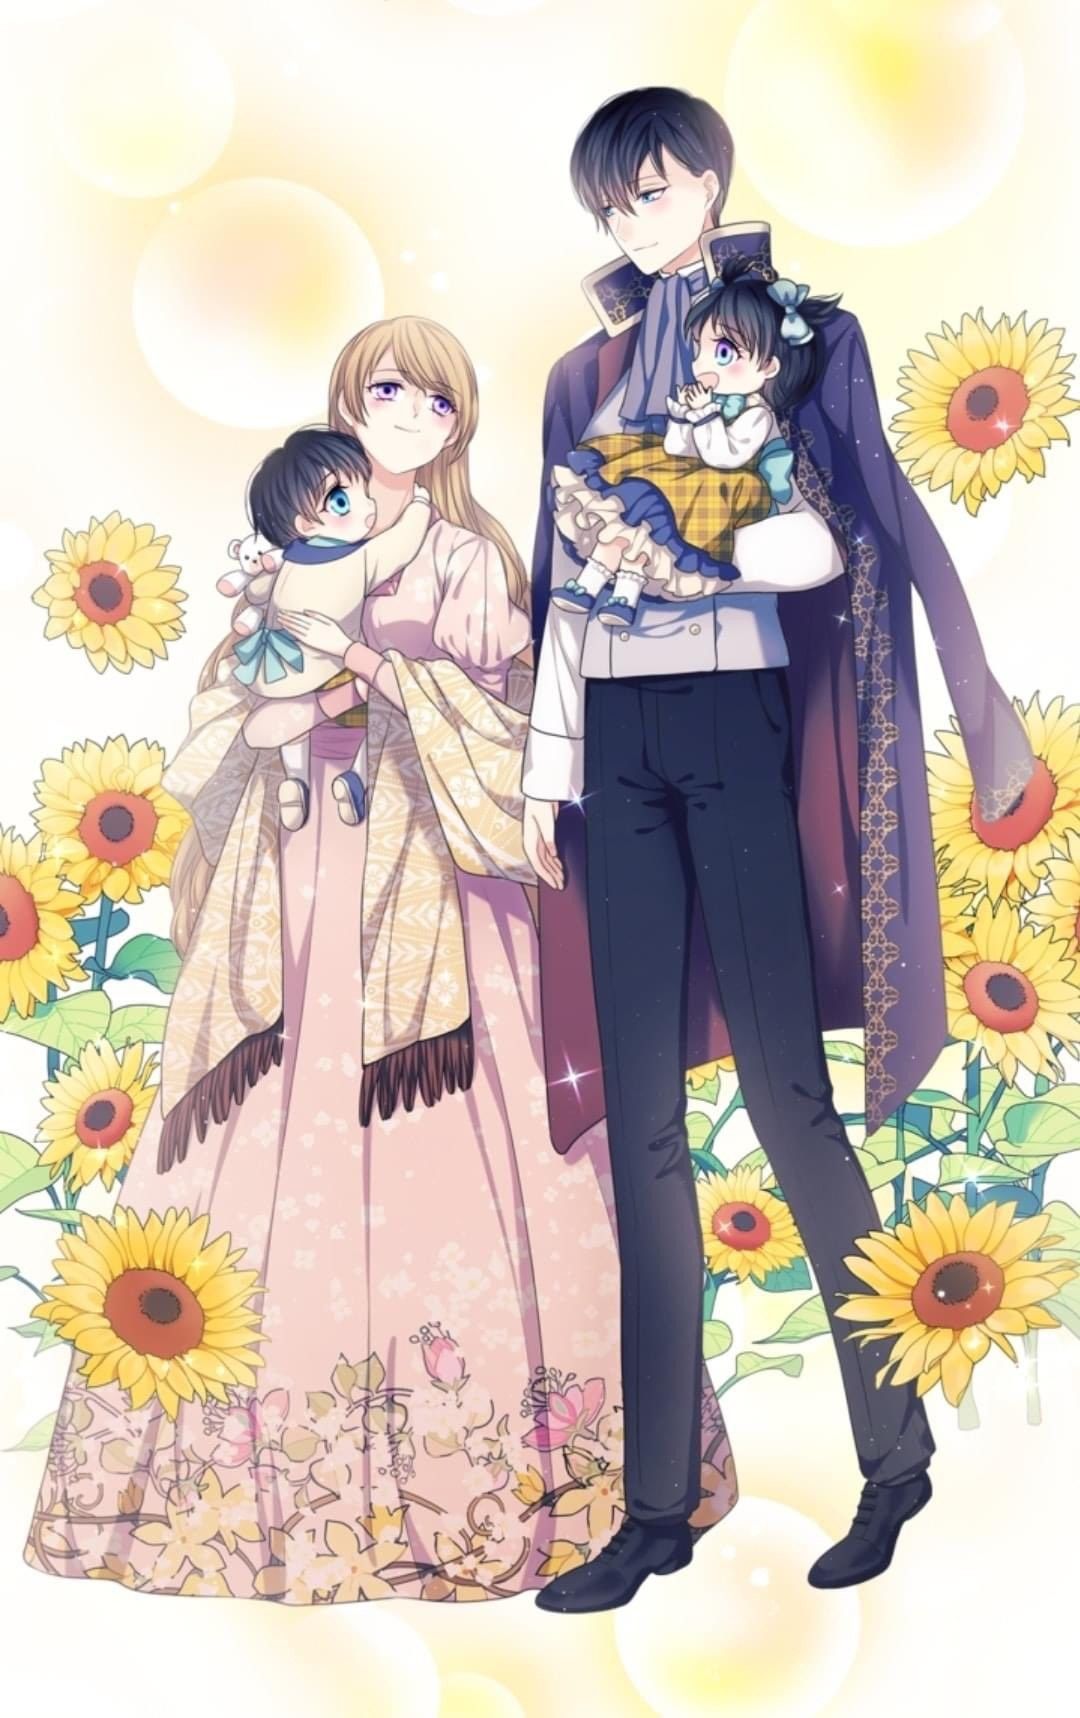 Bạn yêu thích anime và cũng muốn tìm kiếm bức ảnh gia đình đẹp có phong cách anime? Hãy xem ngay bức ảnh gia đình đẹp anime này. Với các nhân vật được hình thành trong phong cách anime đầy sáng tạo, bức ảnh này sẽ làm bạn bất ngờ và hài lòng.